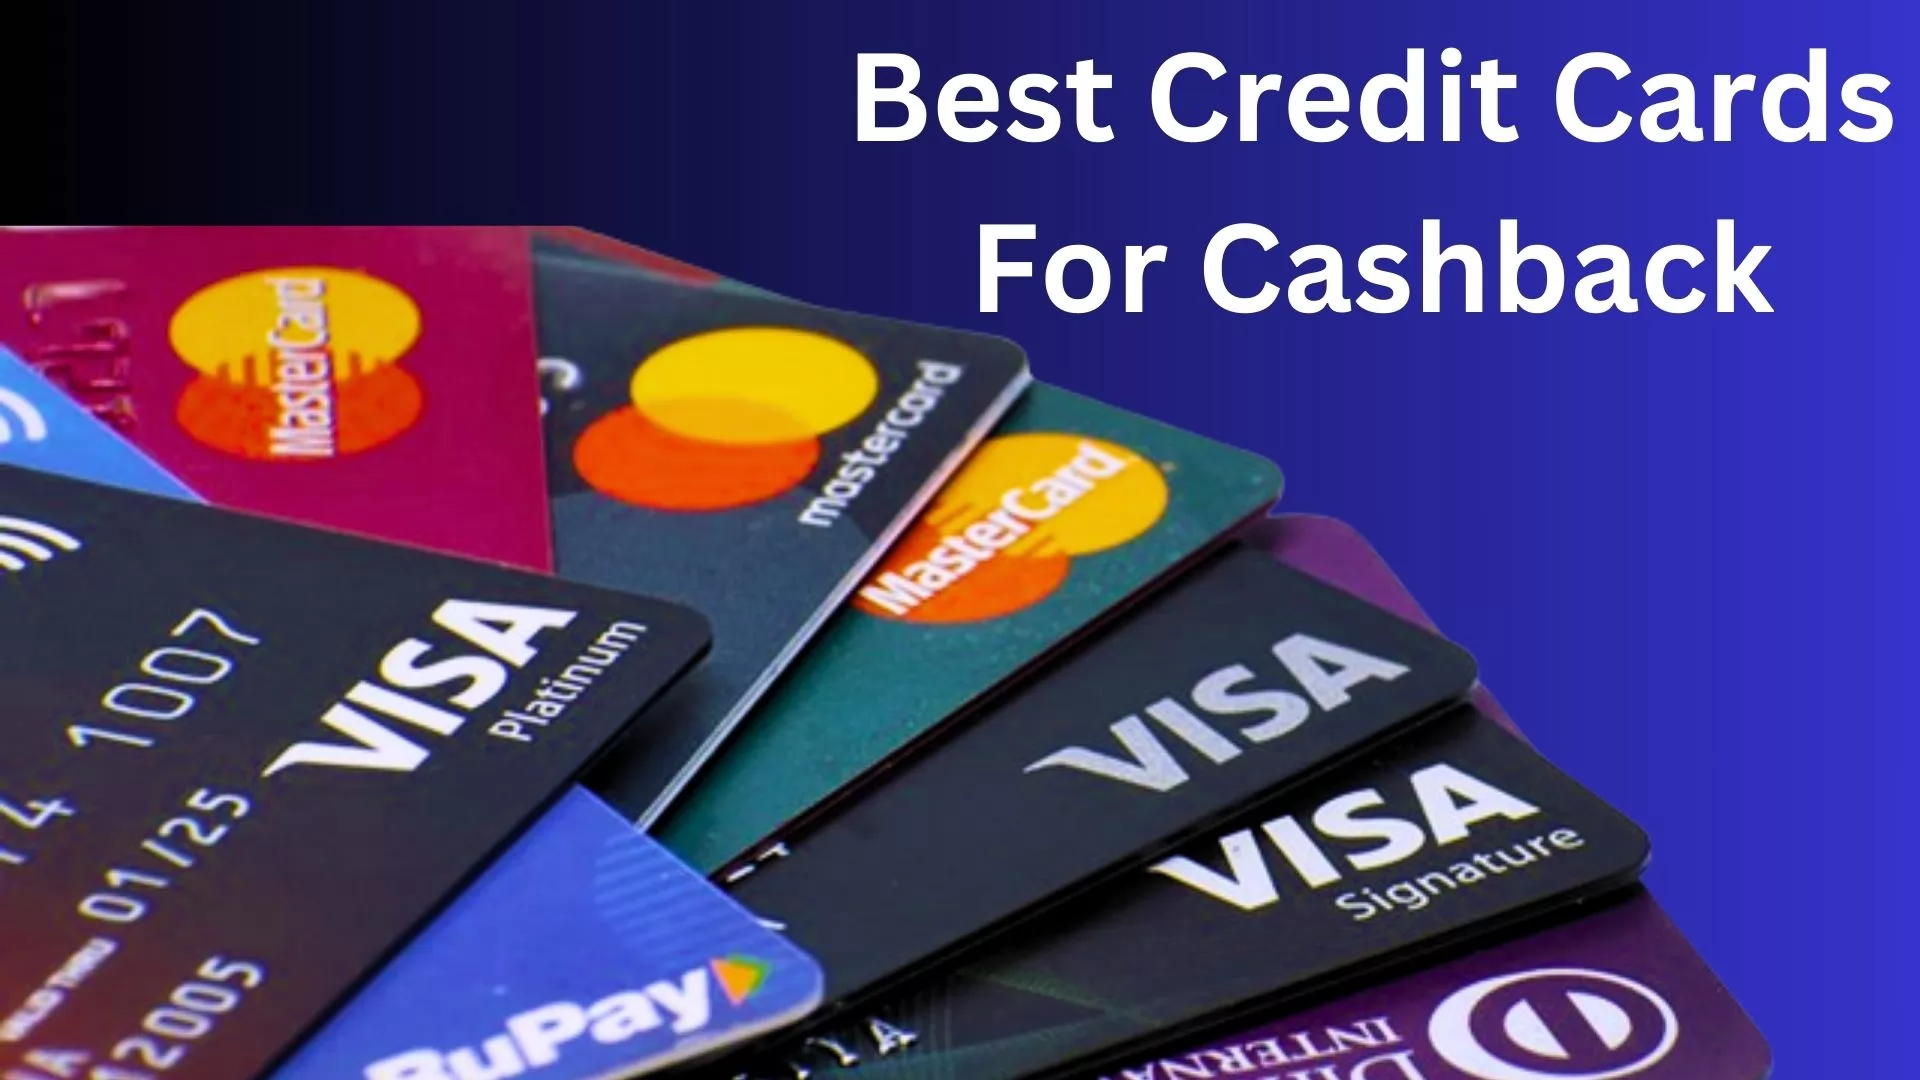 Best Credit Cards For Cashback